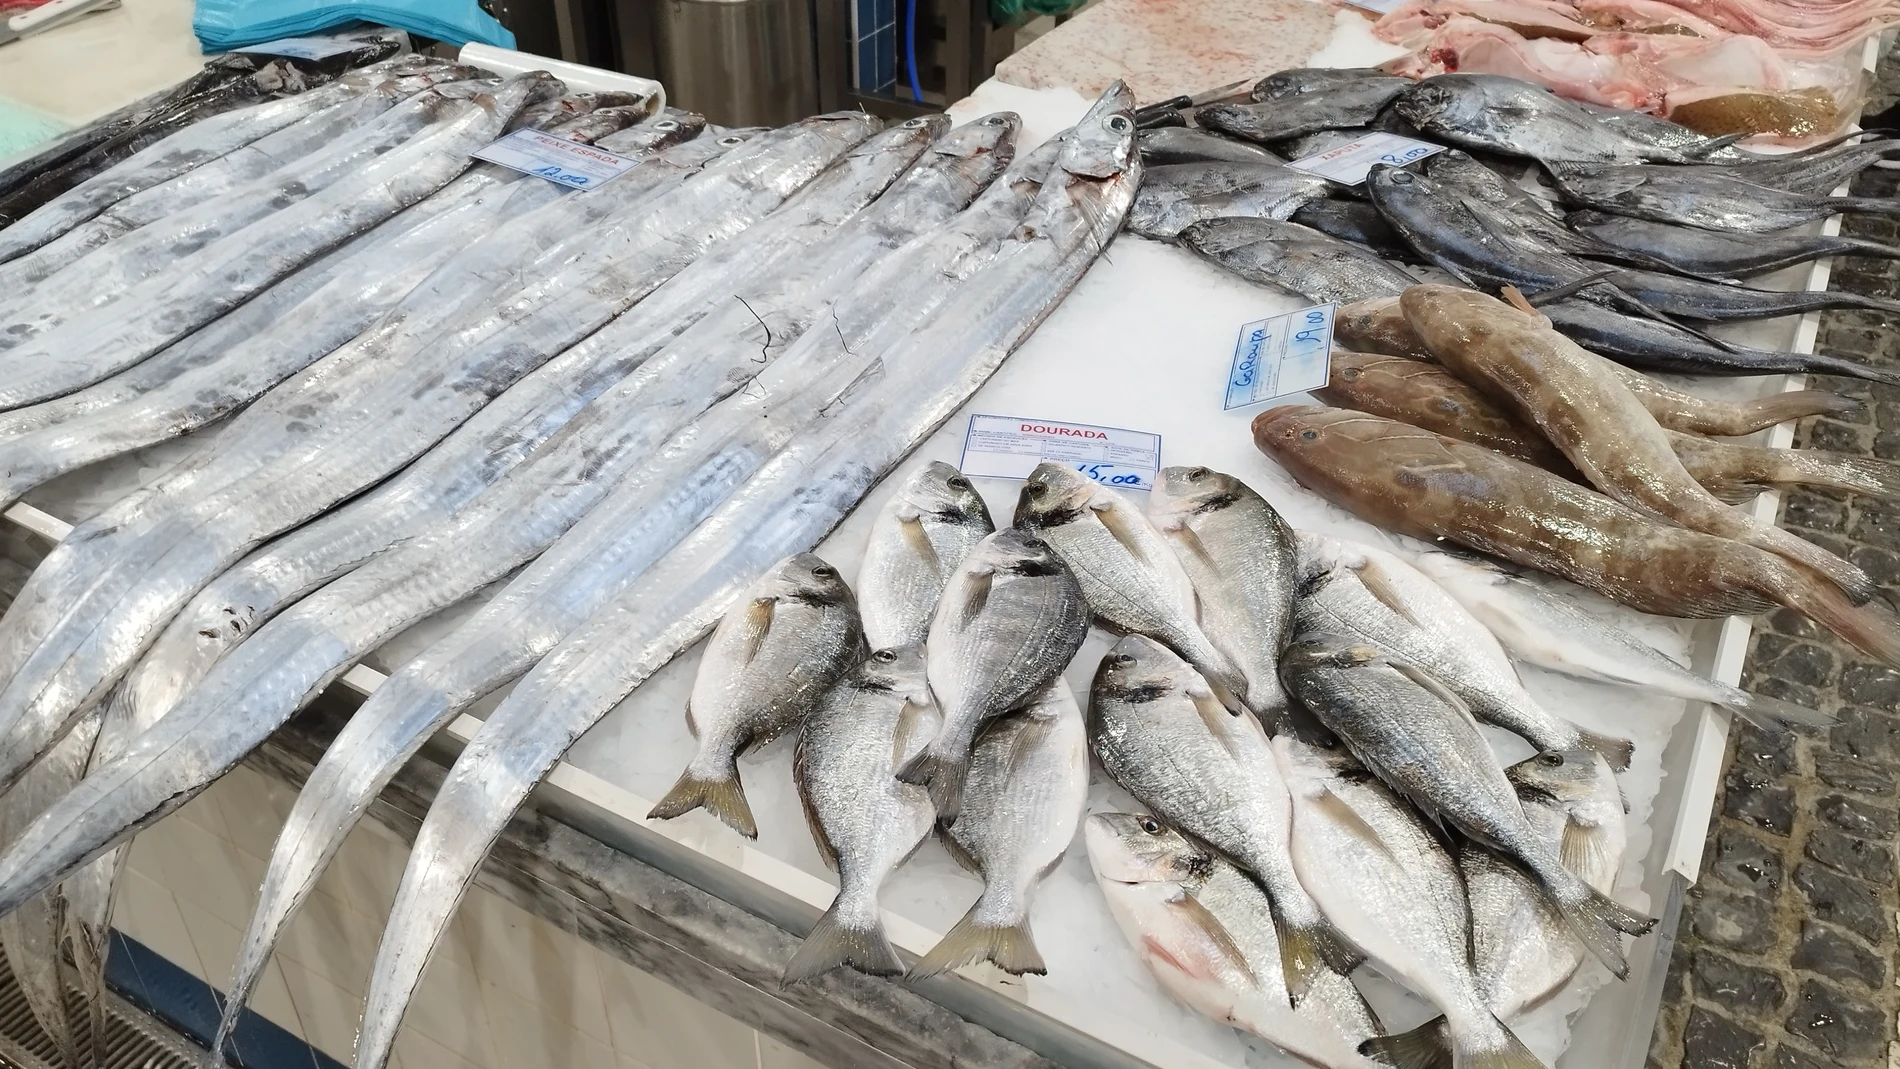 La frescura, variedad y calidad del pescado expuesto para su venta es asombrosa